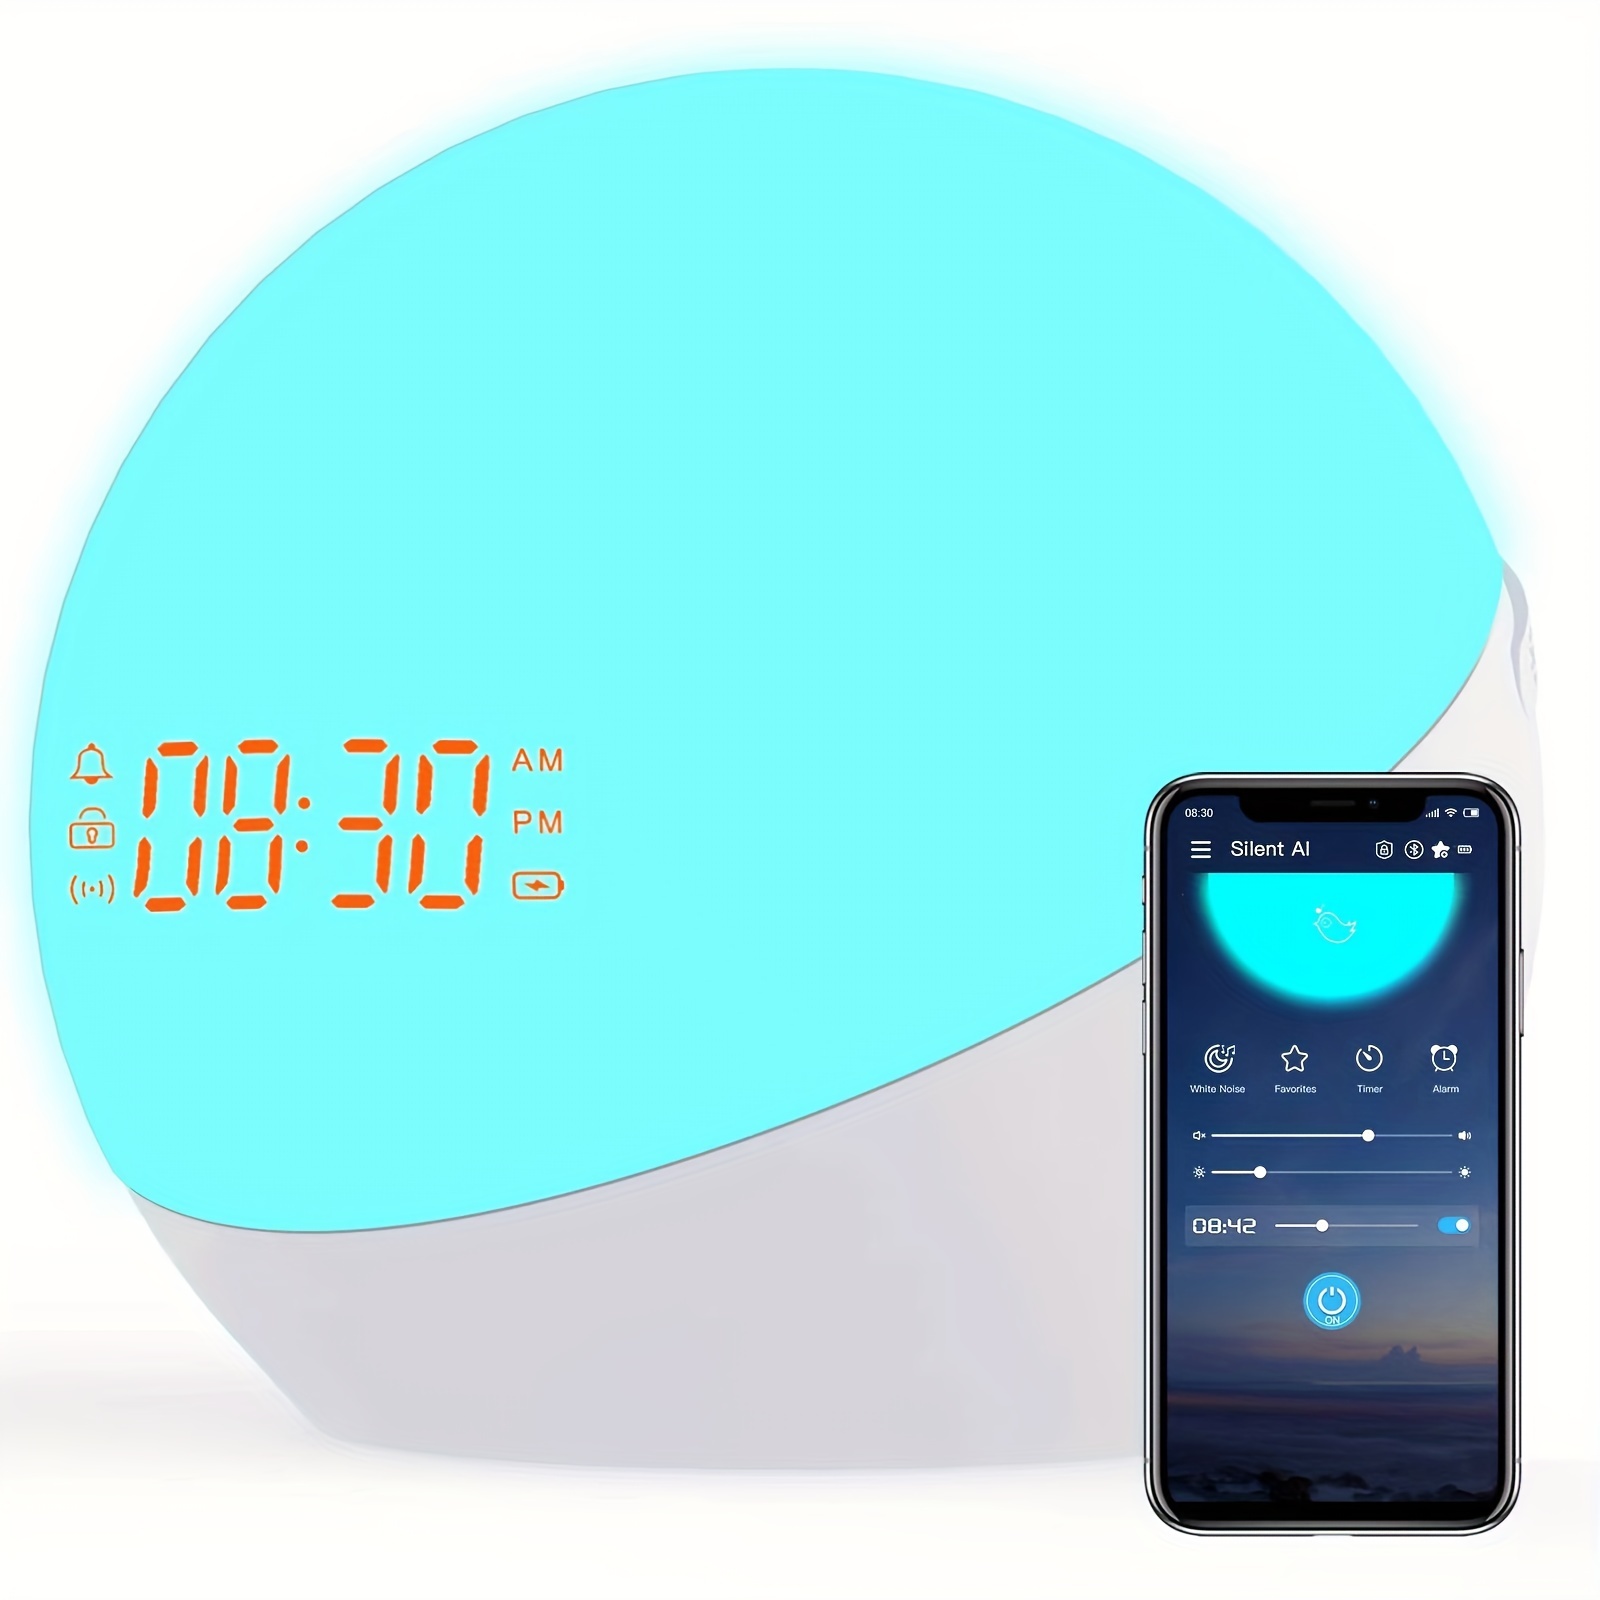 Reloj despertador digital con simulación de amanecer